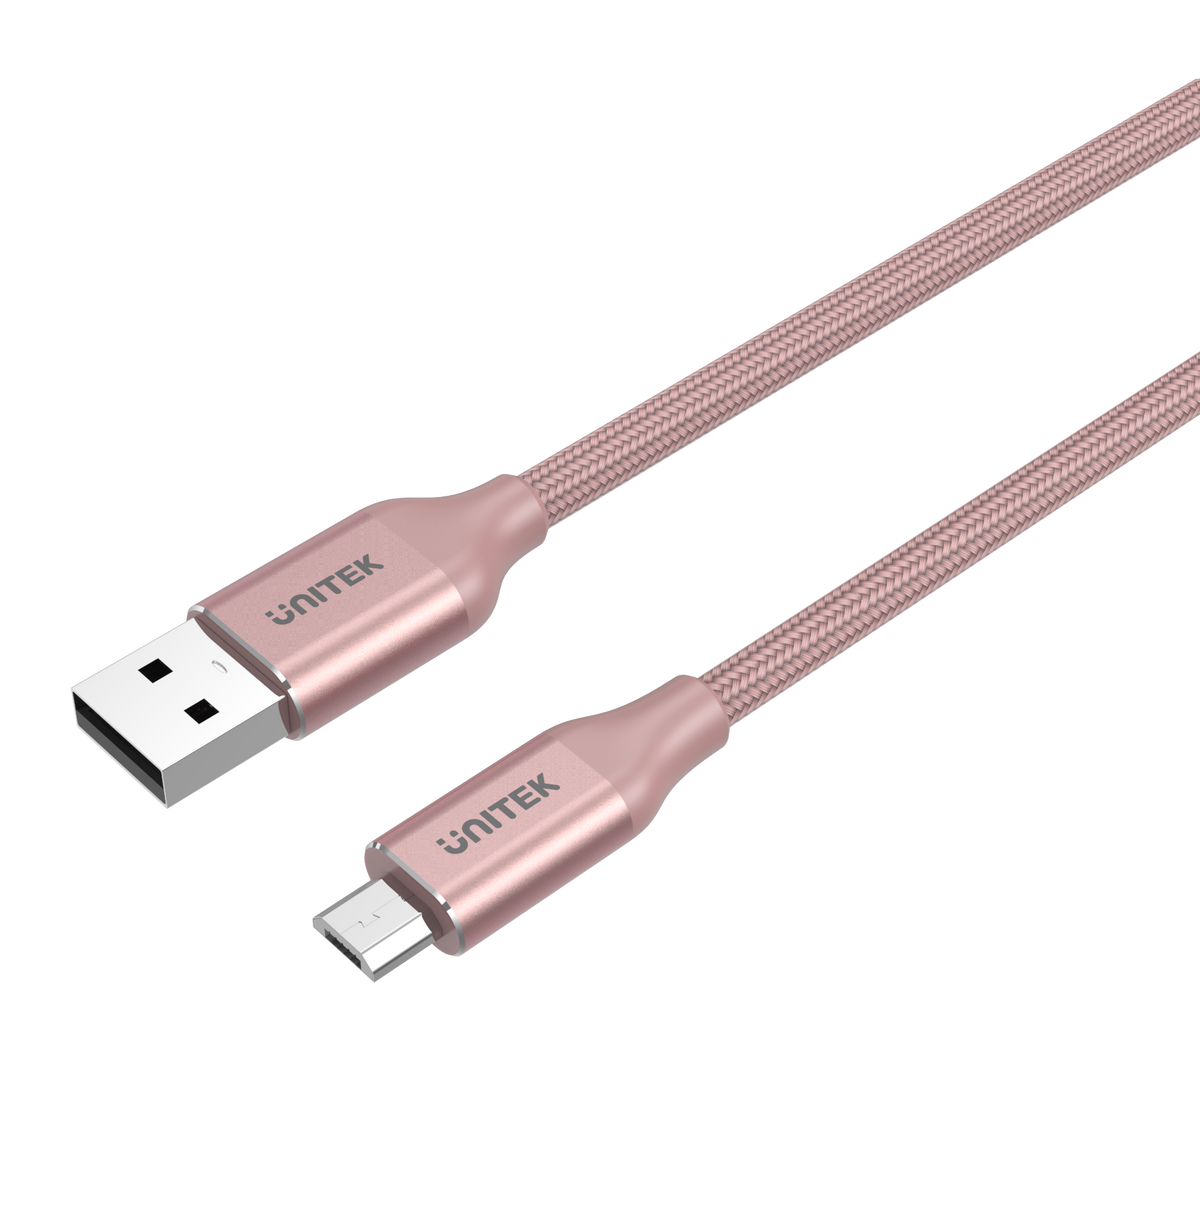 Câble USB-C / USB-C plat 1 m - rose poudré